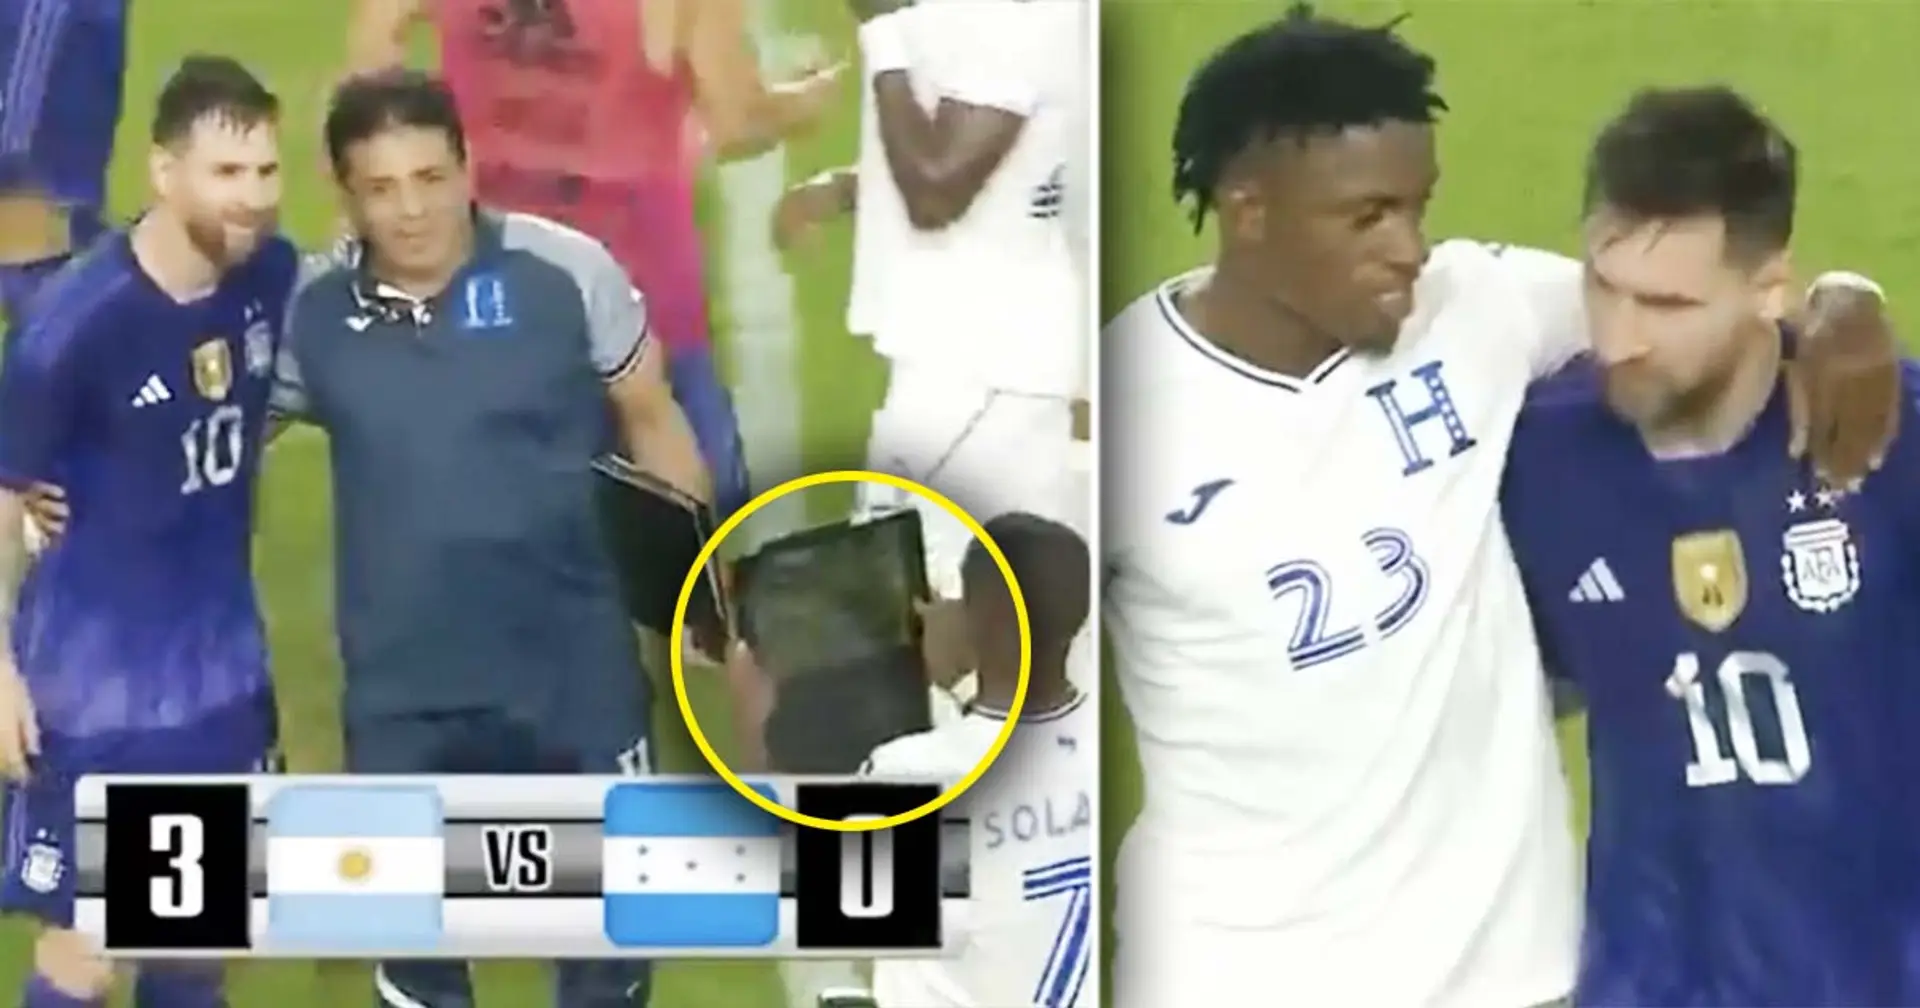 Les joueurs et le staff du Honduras prennent des photos avec Messi après leur défaite, certains utilisent des iPads